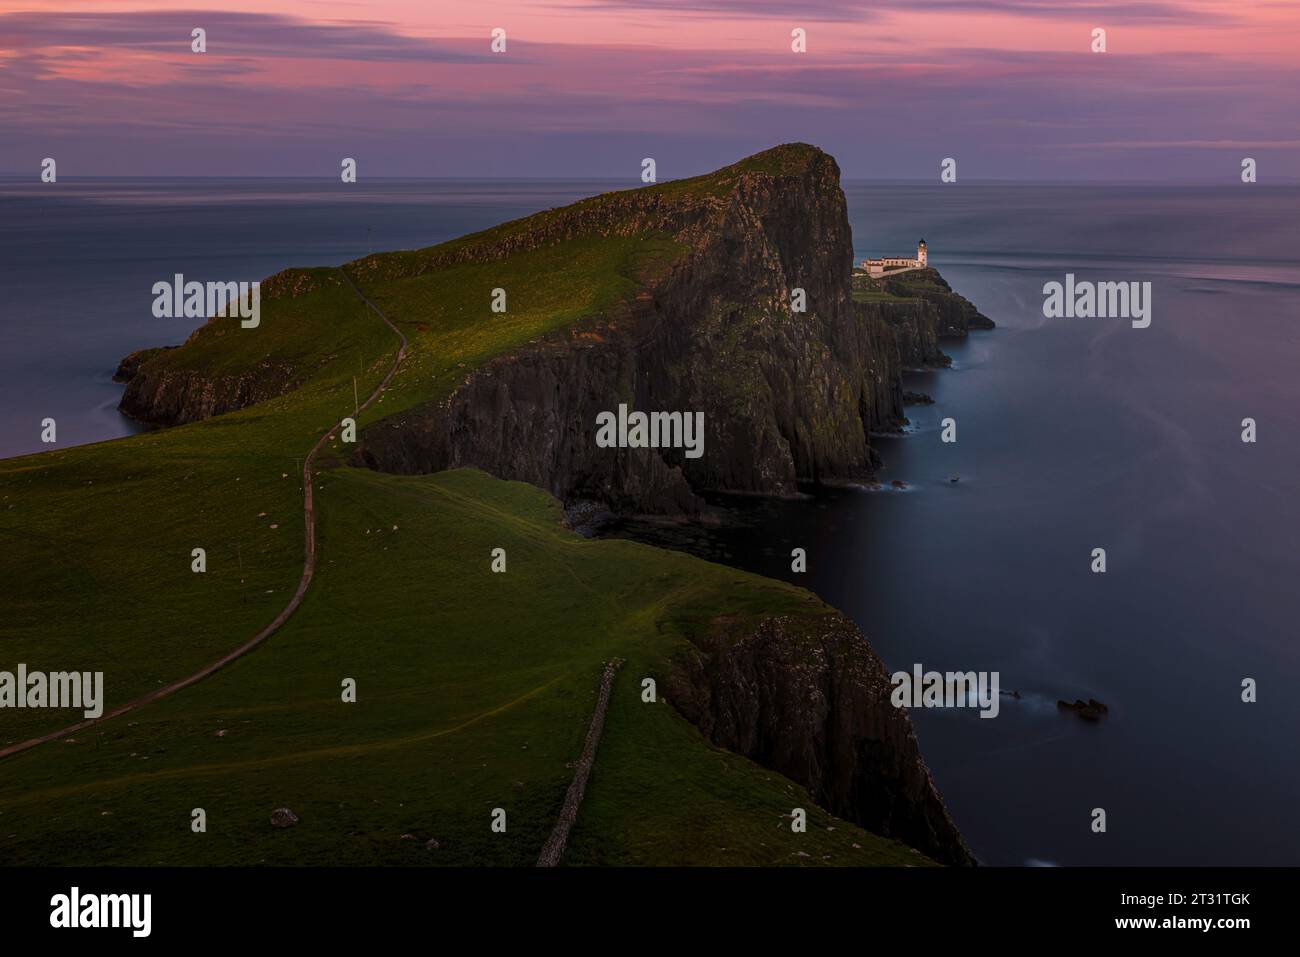 Neist point est un promontoire spectaculaire sur l'île de Skye, avec d'imposantes falaises, des formations rocheuses spectaculaires et un phare emblématique. Banque D'Images